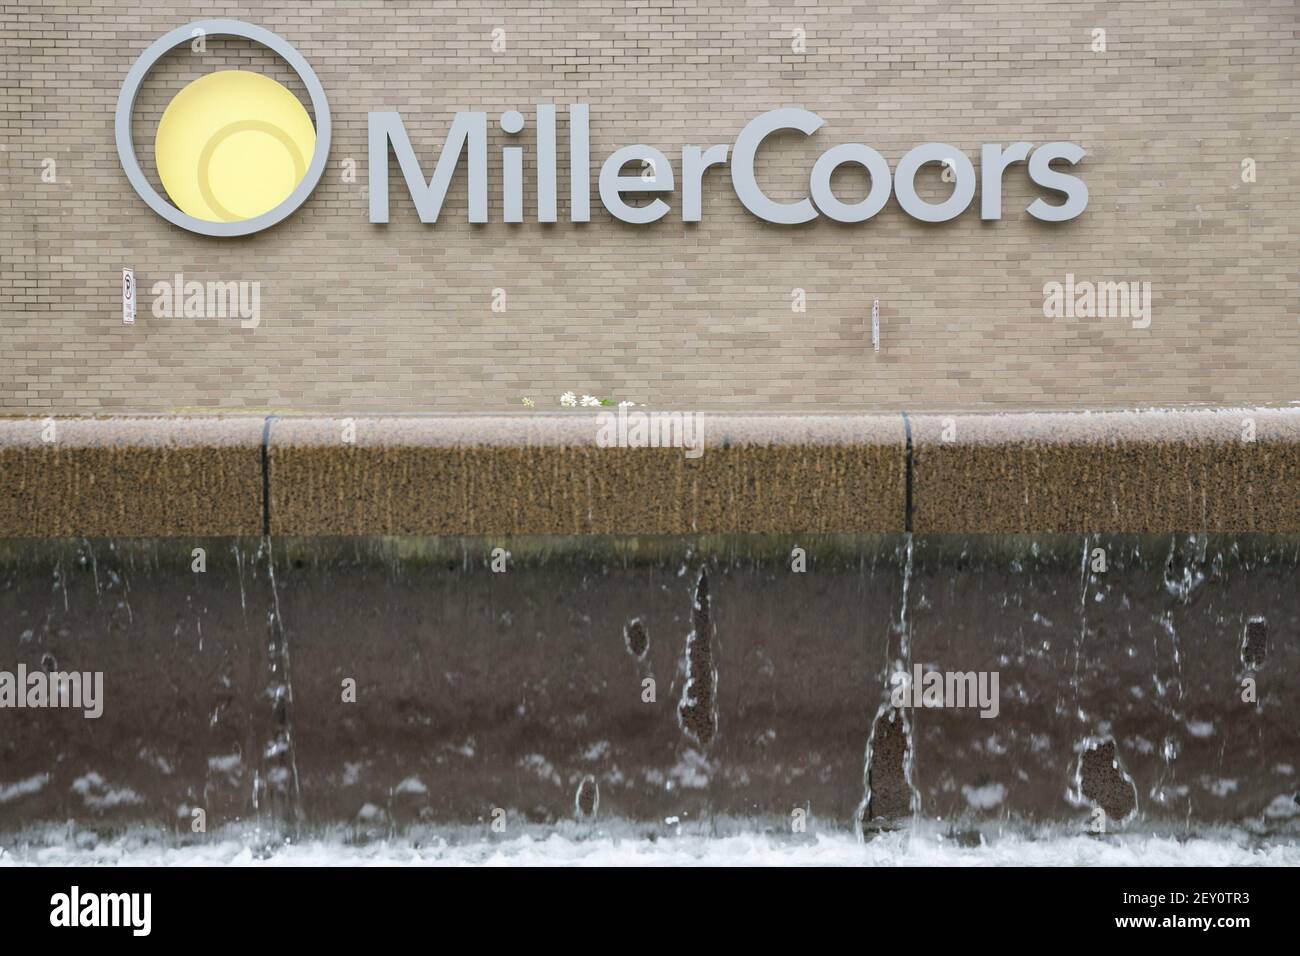 La fabbrica di birra MillerCoors a Milwaukee, Wisconsin, il 12 agosto 2014. MillerCoors è una joint venture tra SABMiller, la società madre della Miller Brewing Company e la Molson Coors Brewing Company. Foto di credito: Kristoffer Tripplaar/ Sipa USA Foto Stock